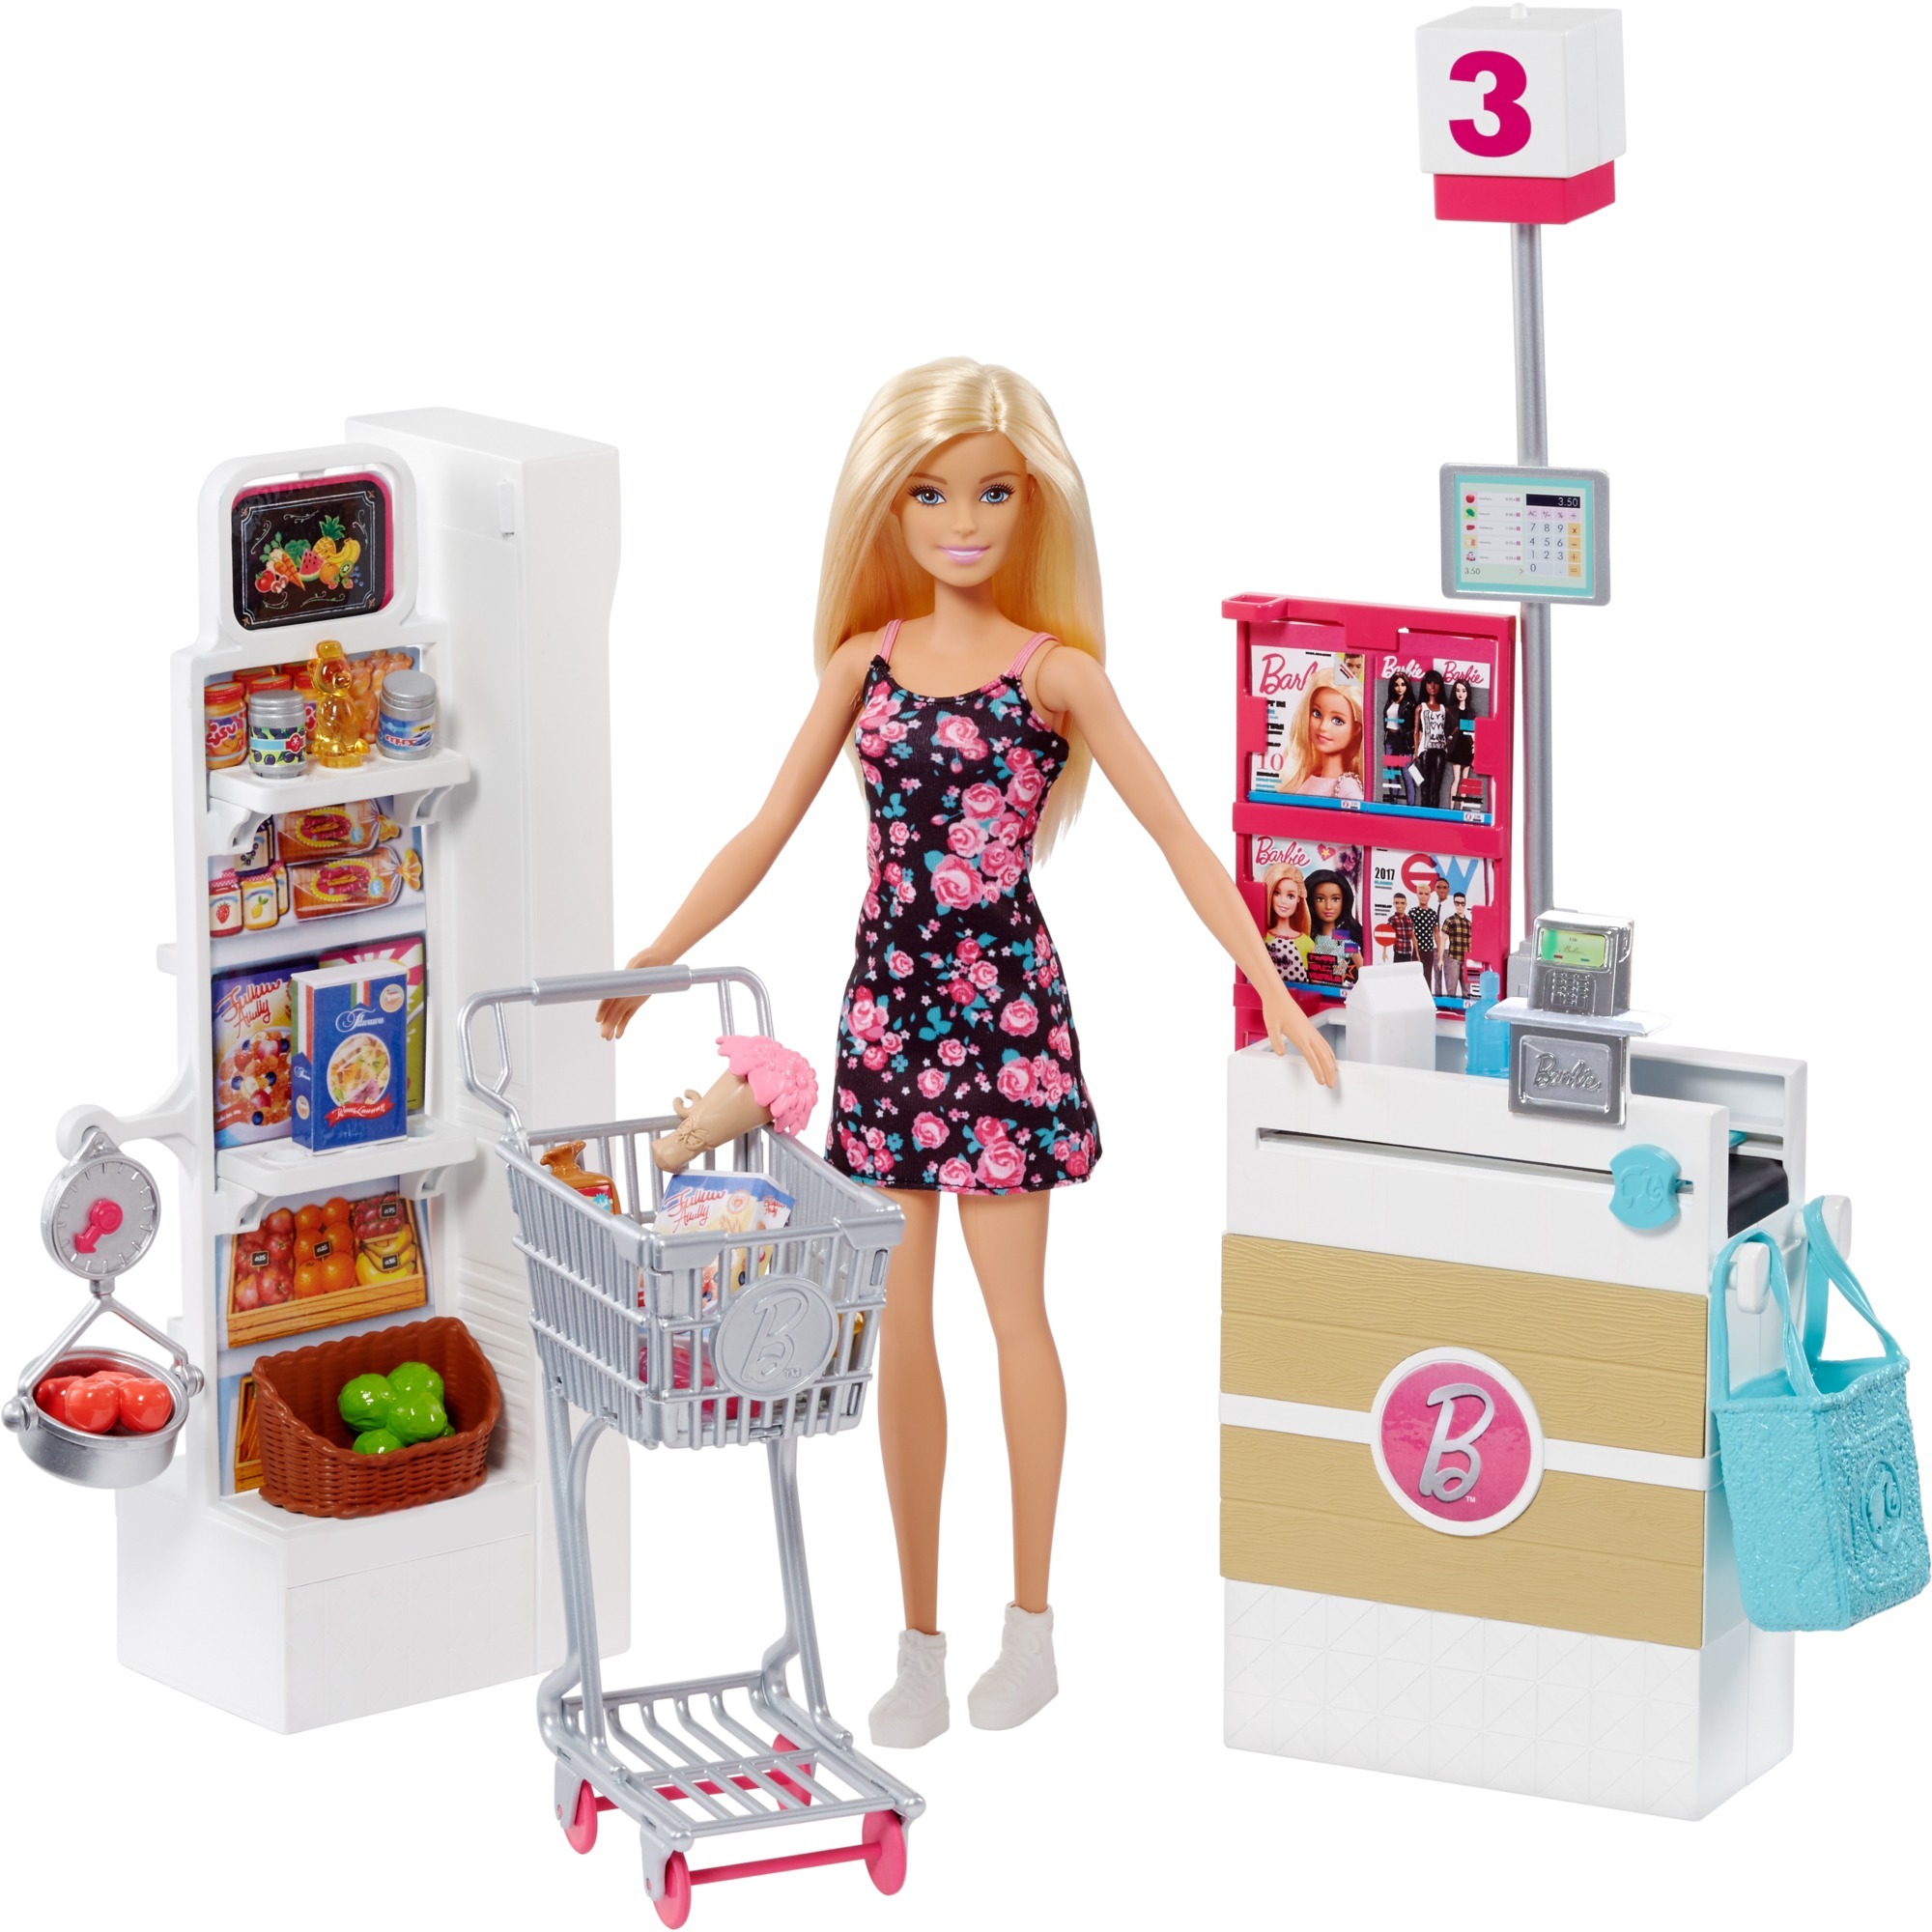 Игрушка барби купить. Mattel Barbie frp01 Барби супермаркет в ассортименте. Набор Barbie в супермаркете, 28 см, frp01. Игровой набор Mattel "Barbie новый дом мечты". Игровой набор Barbie frp01.